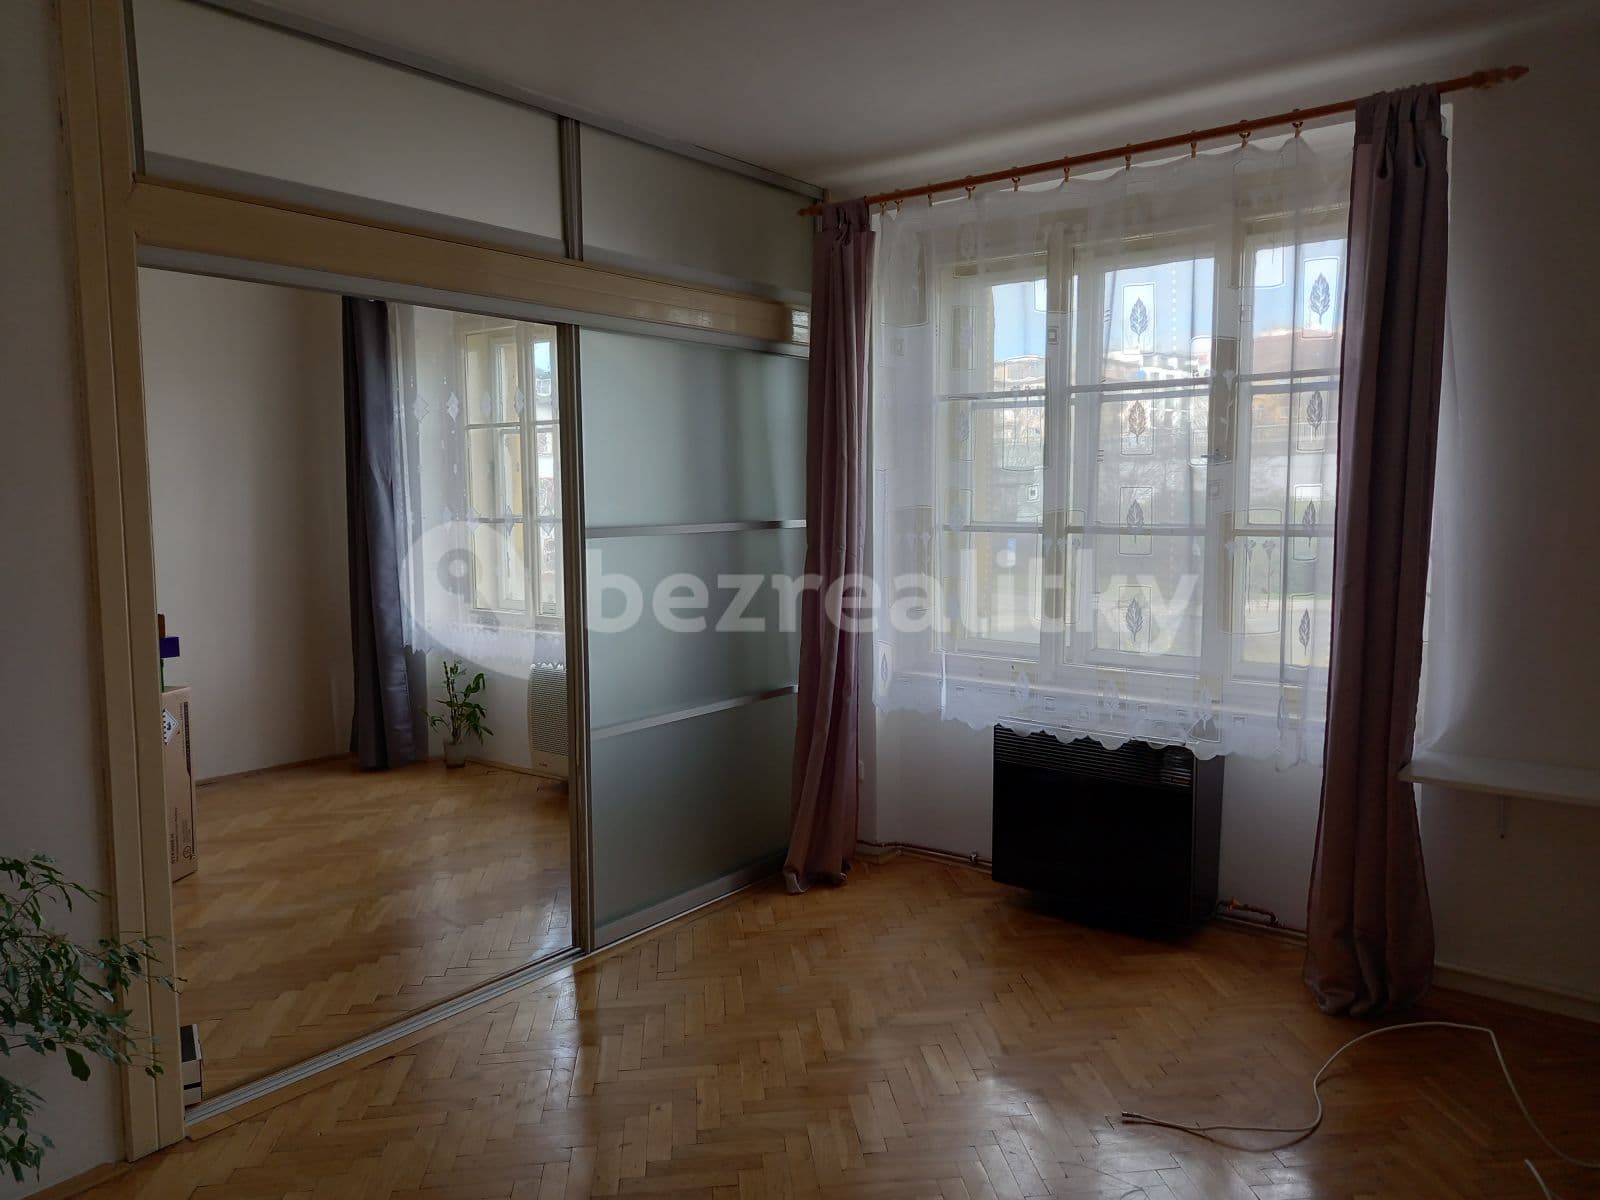 1 bedroom with open-plan kitchen flat to rent, 71 m², Horovo náměstí, Prague, Prague